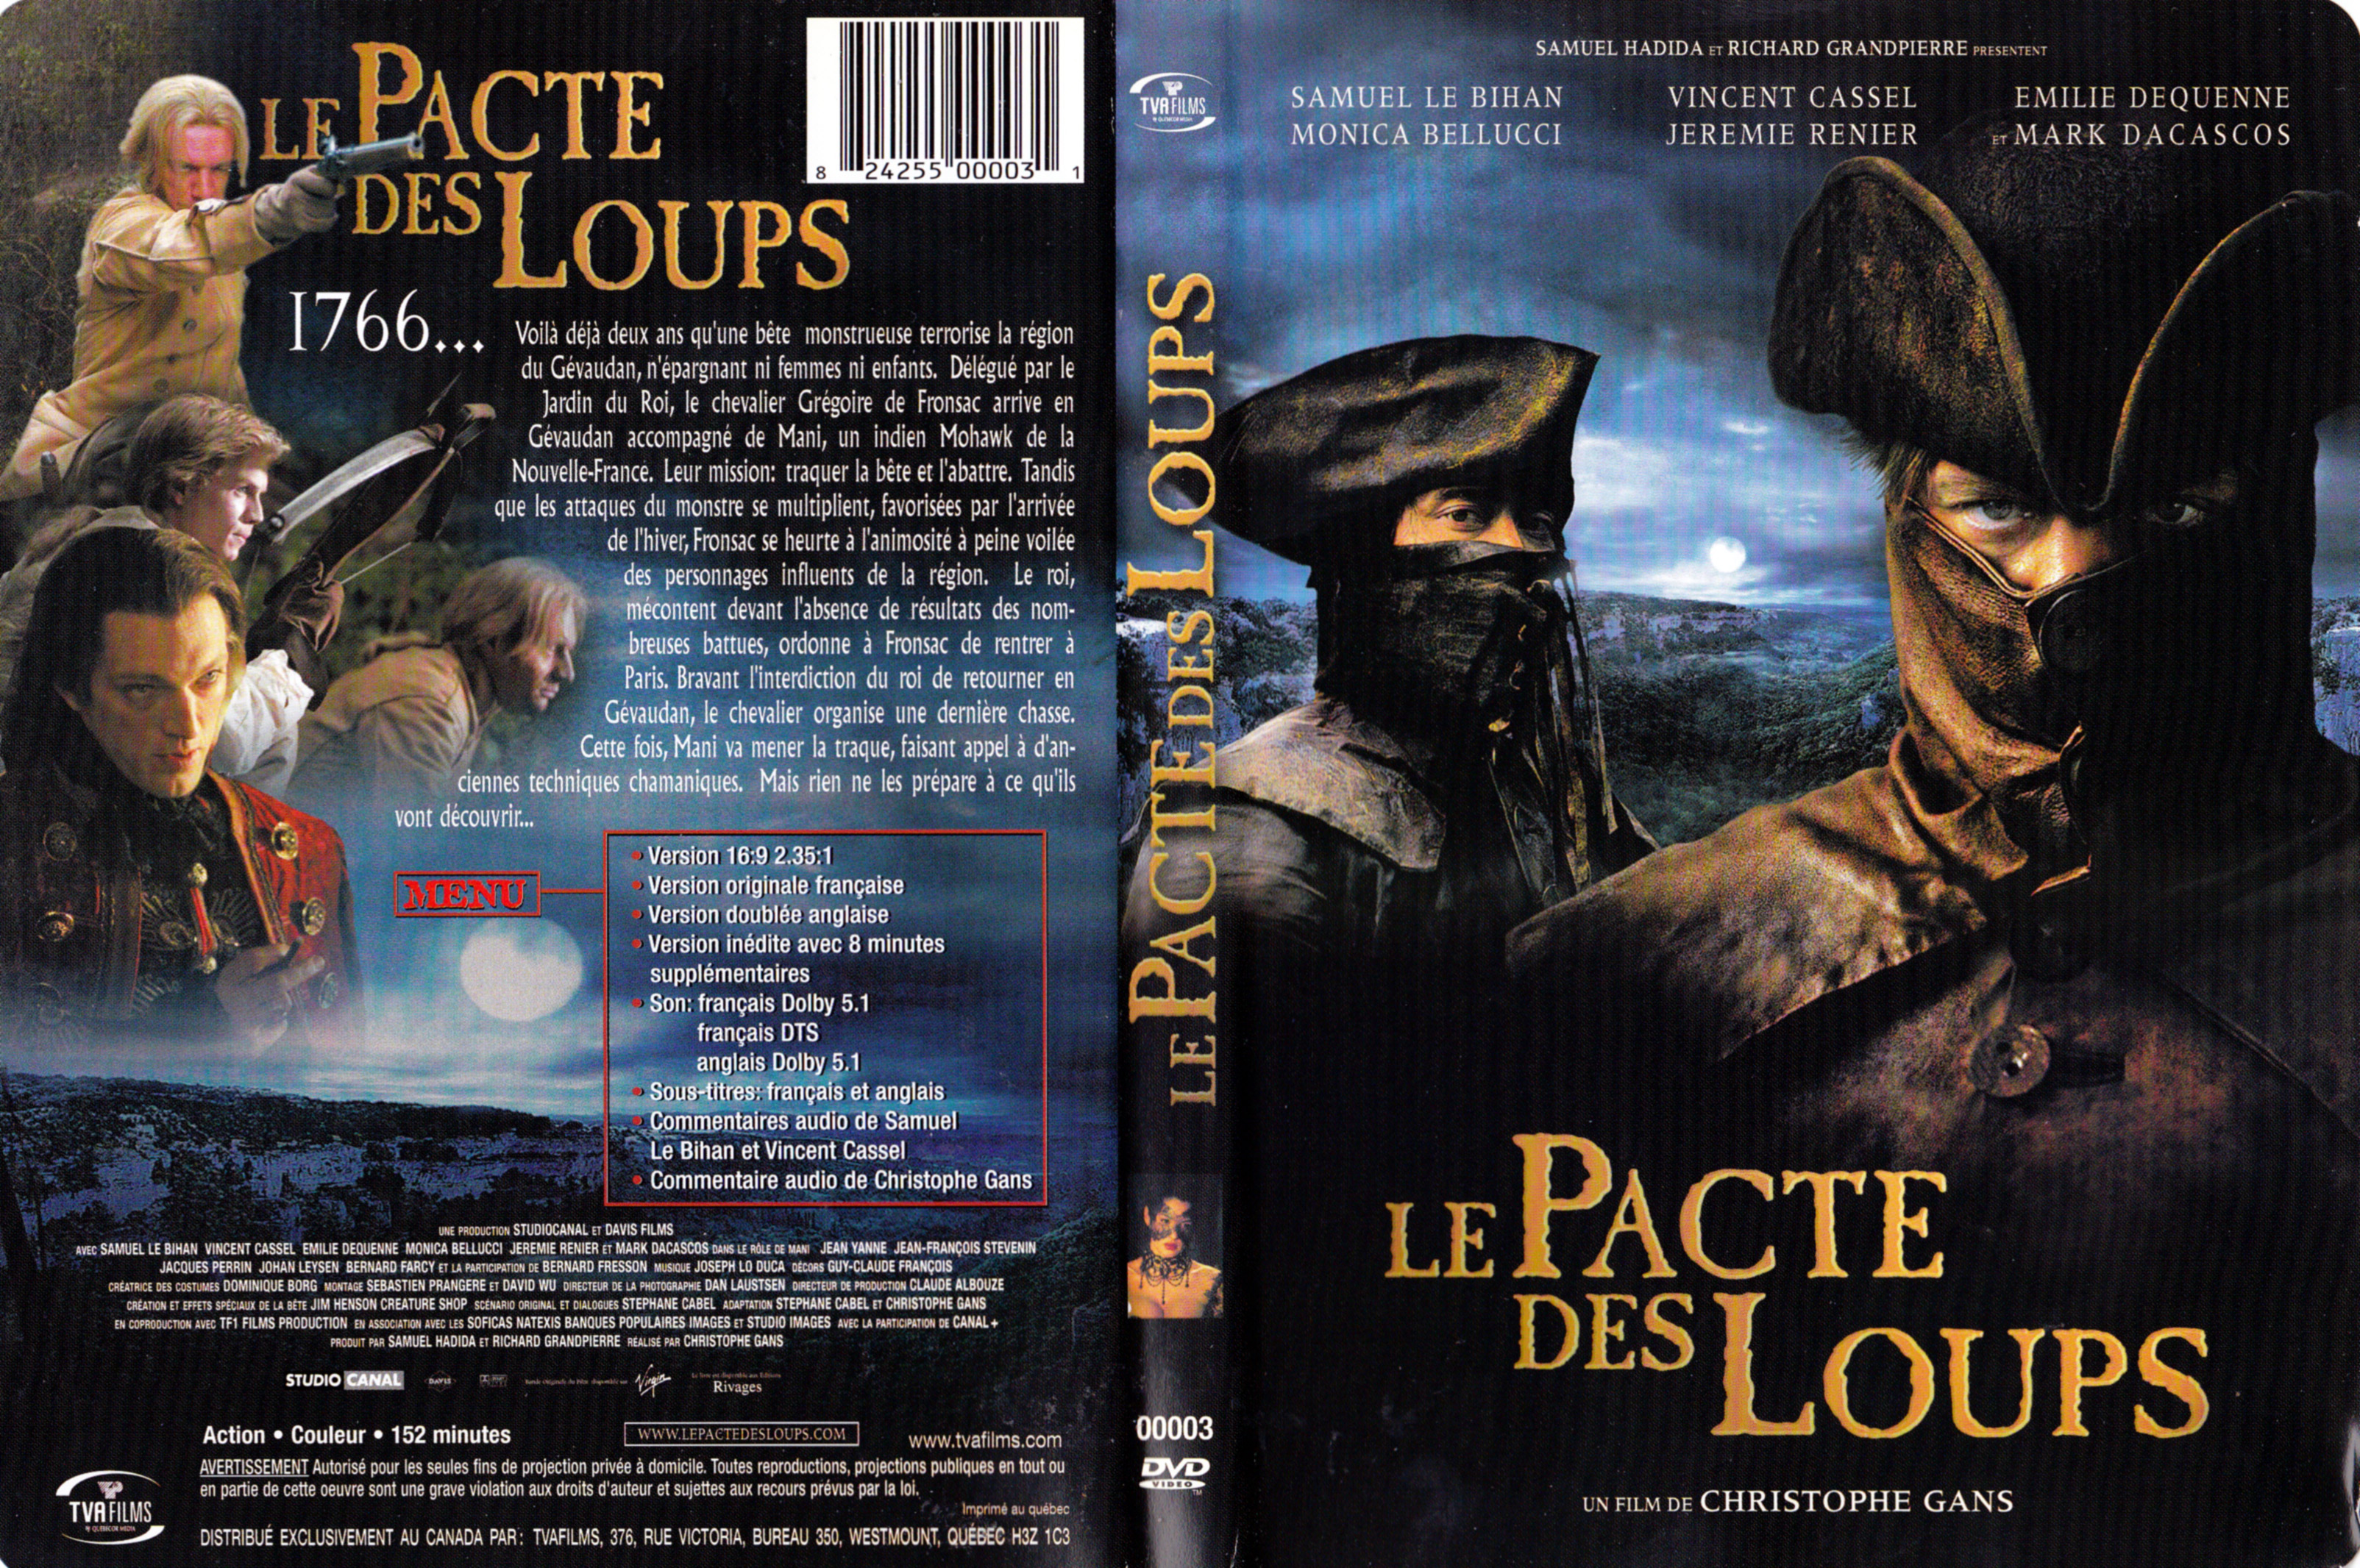 Jaquette DVD Le pacte des loups (Canadienne)